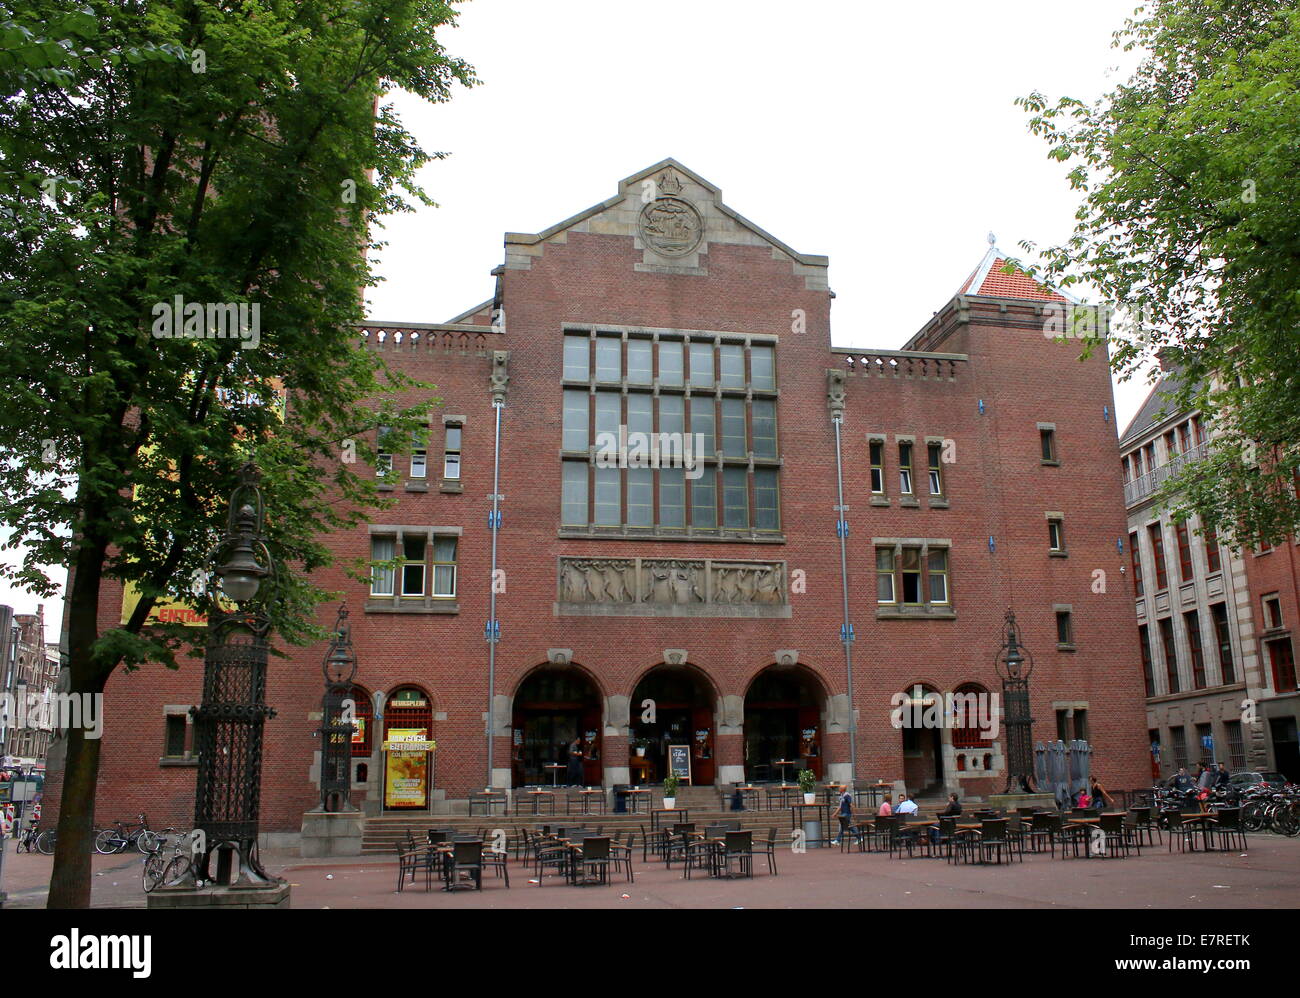 Beurs van Berlage (1896-1903) bâtiment sur le Damrak, centre d'Amsterdam. Anciennement un échange de marchandises. Architecte H.P. Berlage Banque D'Images